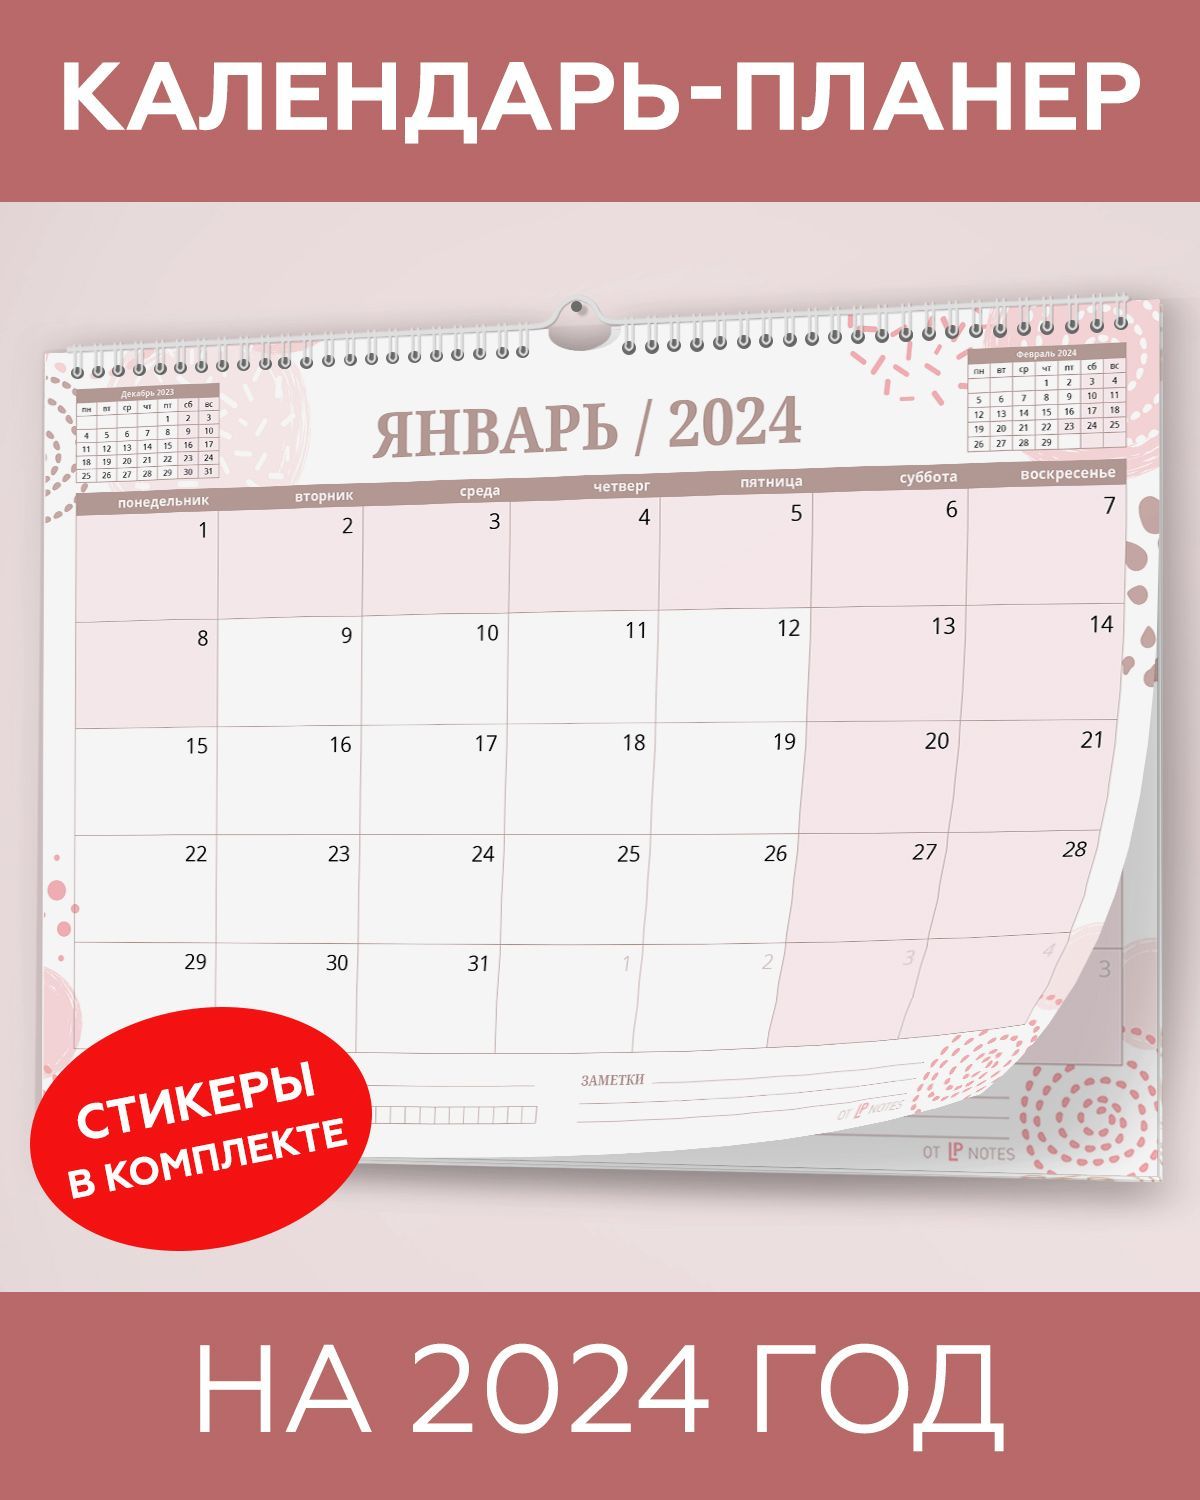 Григорианский календарь - прощай? | Культура | sunnyhair.ru